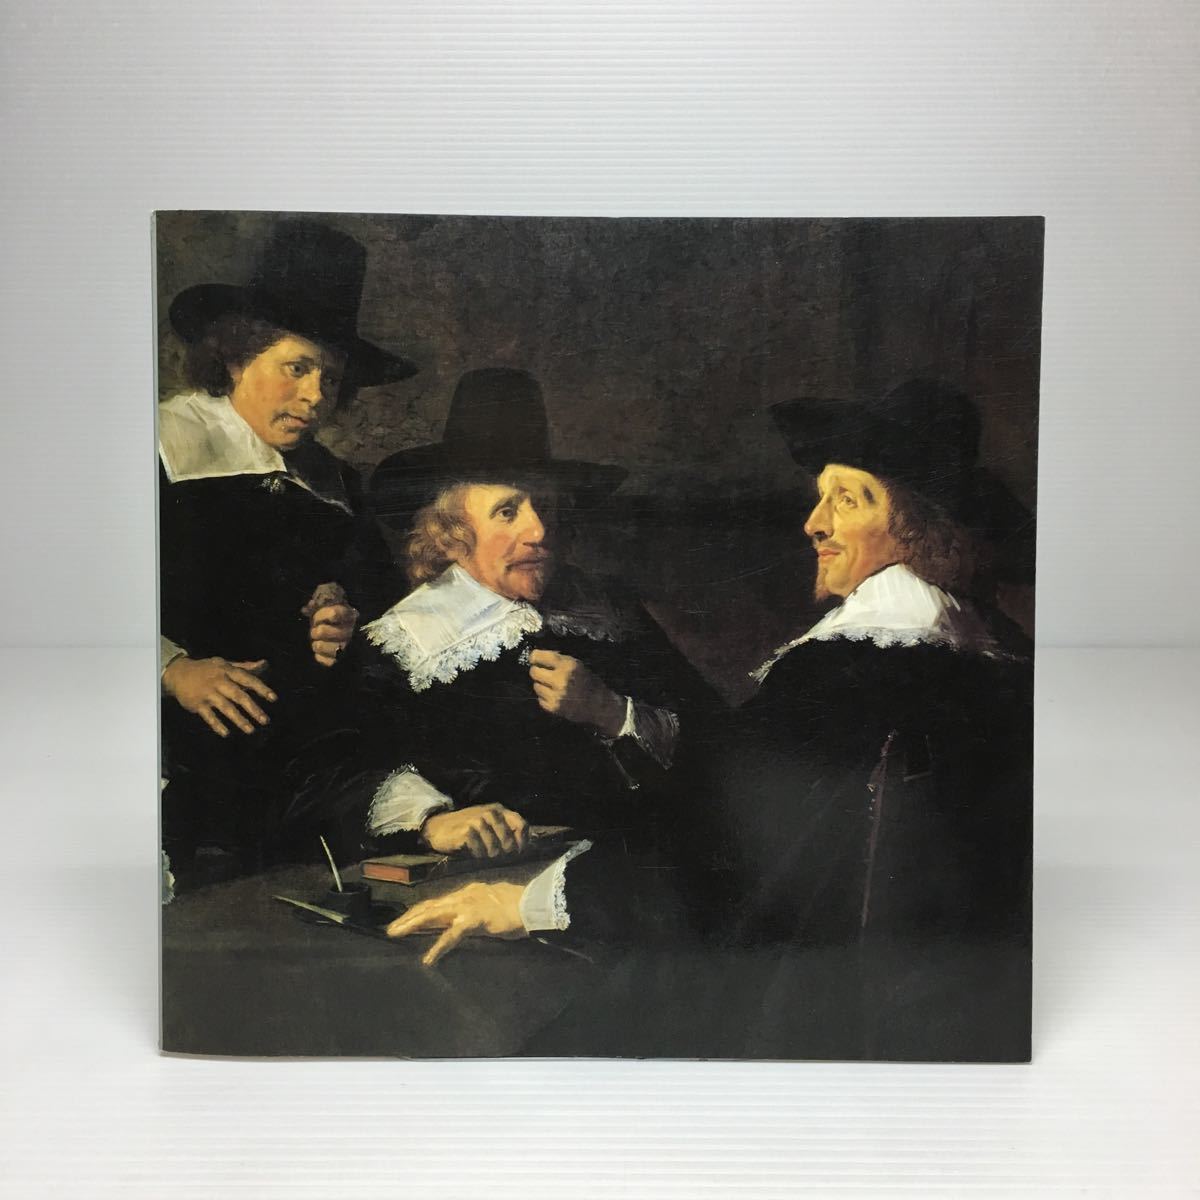 m2/17वीं शताब्दी की डच पेंटिंग में फ्रैंस हॉल्स और गोल्डन रेशियो फ्रैंस हॉल्स और हार्लेम पेंटर्स 1988, चित्रकारी, कला पुस्तक, संग्रह, सूची